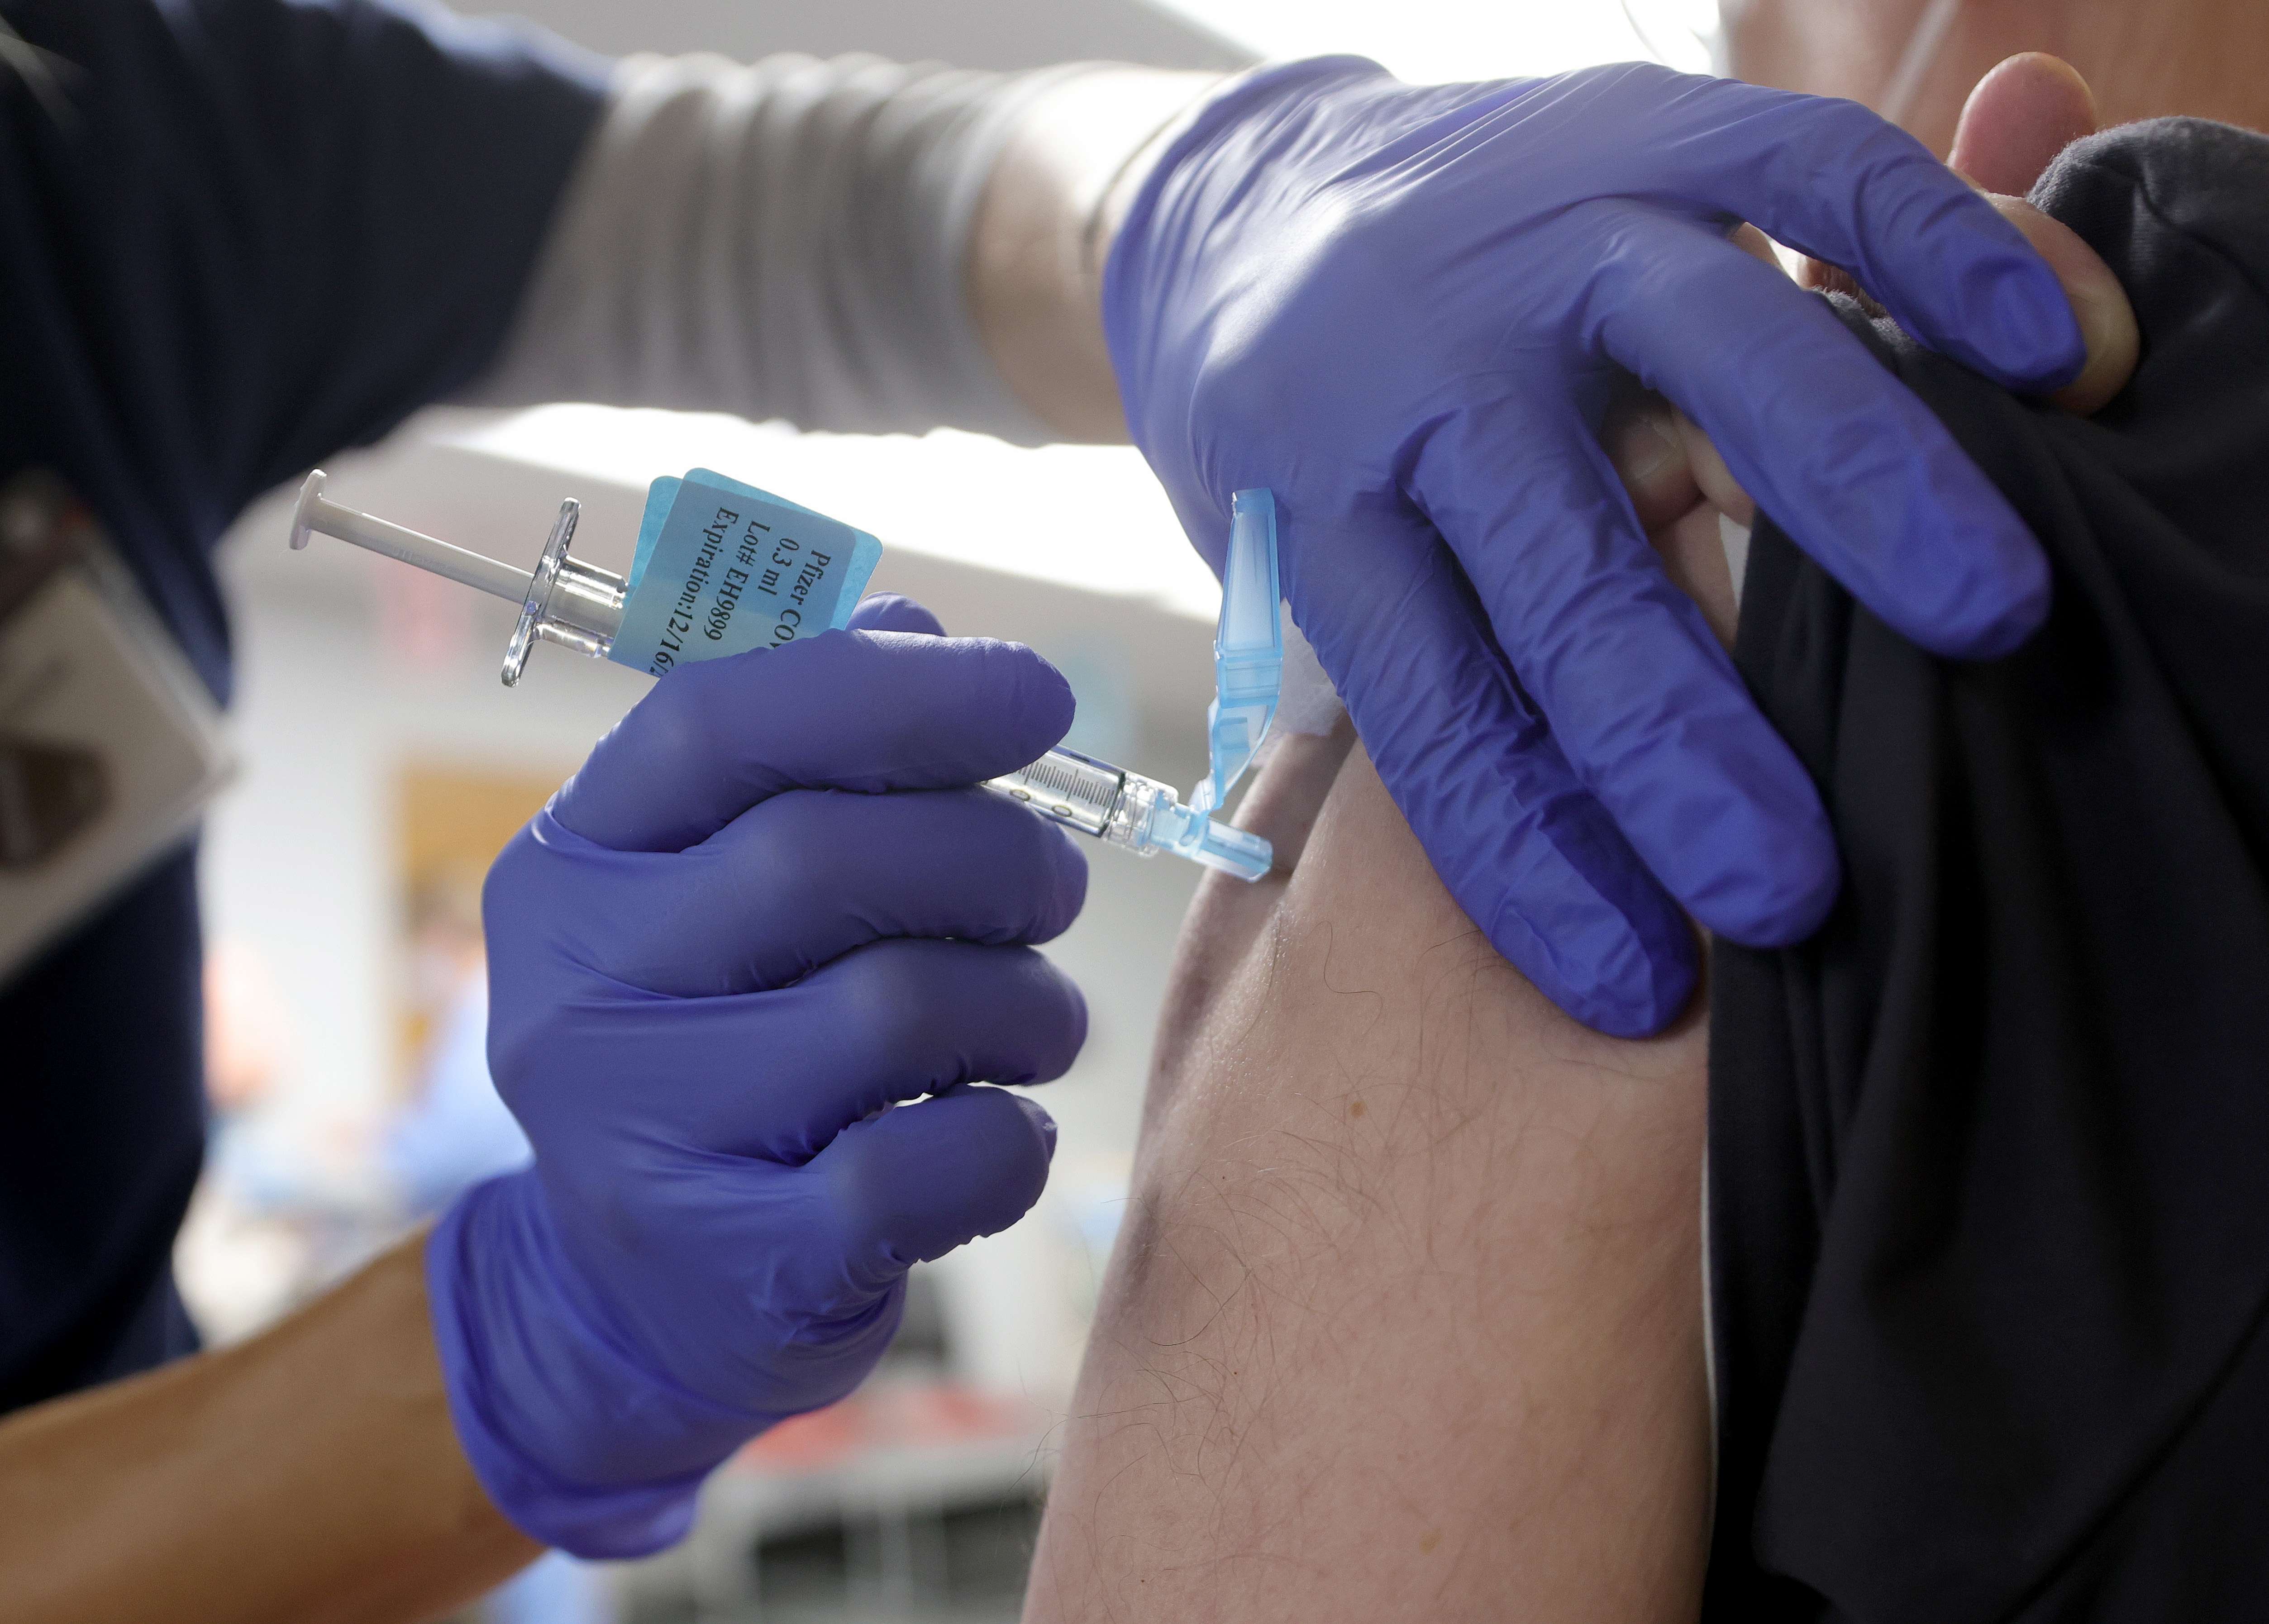 La trabajadora del sector sanitario de Alaska, EE. UU., que ha sufrido una reacción alérgica a la vacuna de Pfizer contra la covid-19 presenta una anafilaxis. (Foto Prensa Libre: AFP)